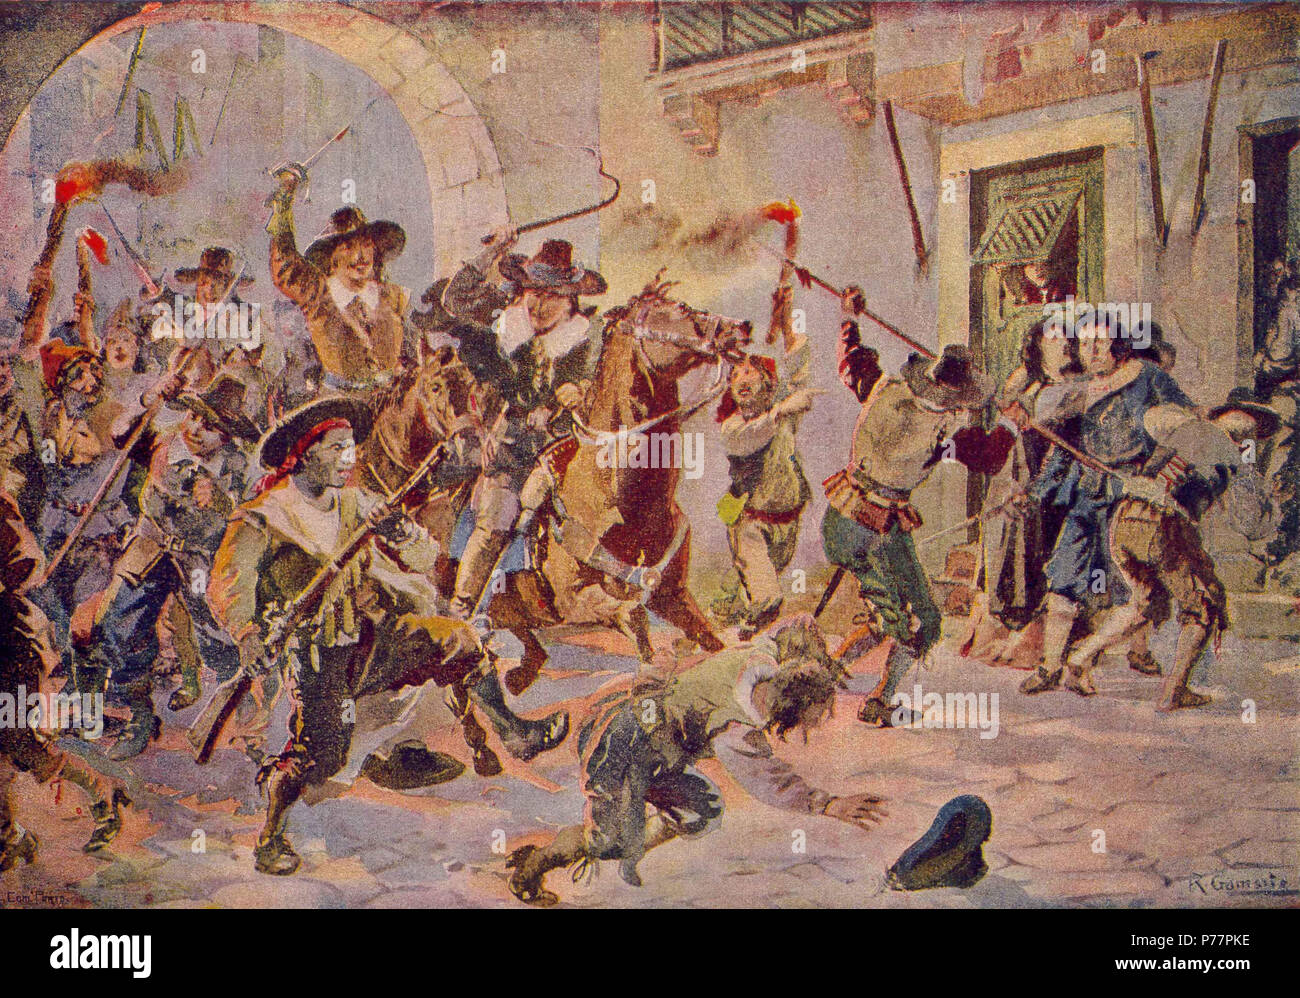 26 Distúrbios de Afonso VI em Lisboa (Roque Gameiro, Quadros da História de Portugal, 1917) Stock Photo